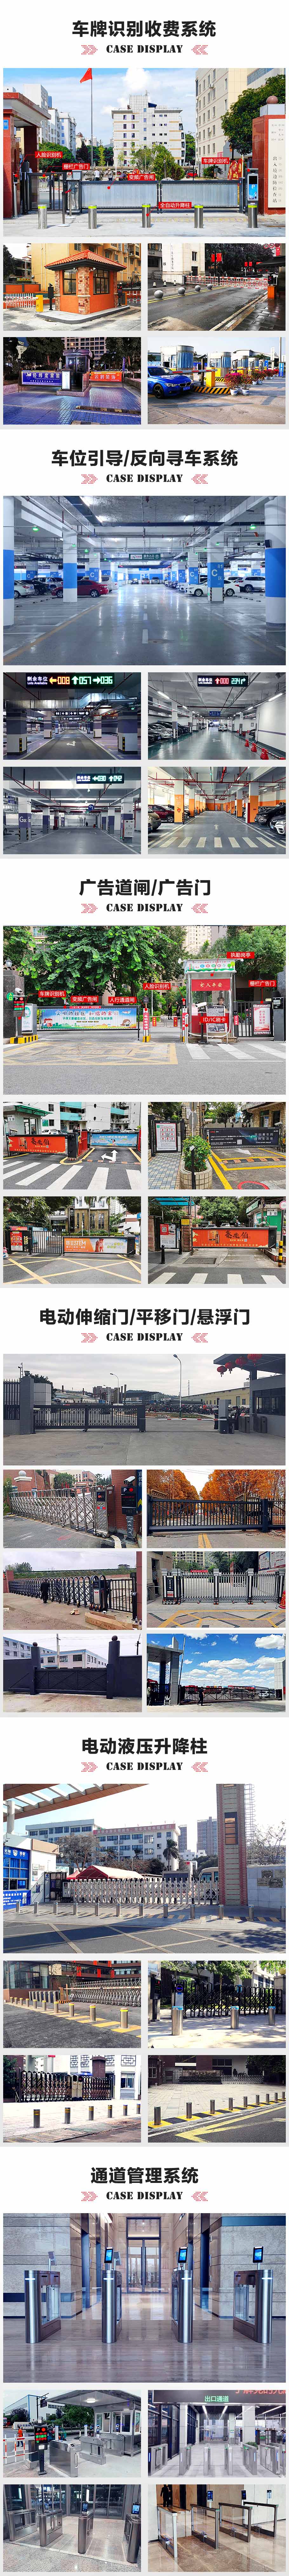 广州军区第十二干休所停车场智能管理系统